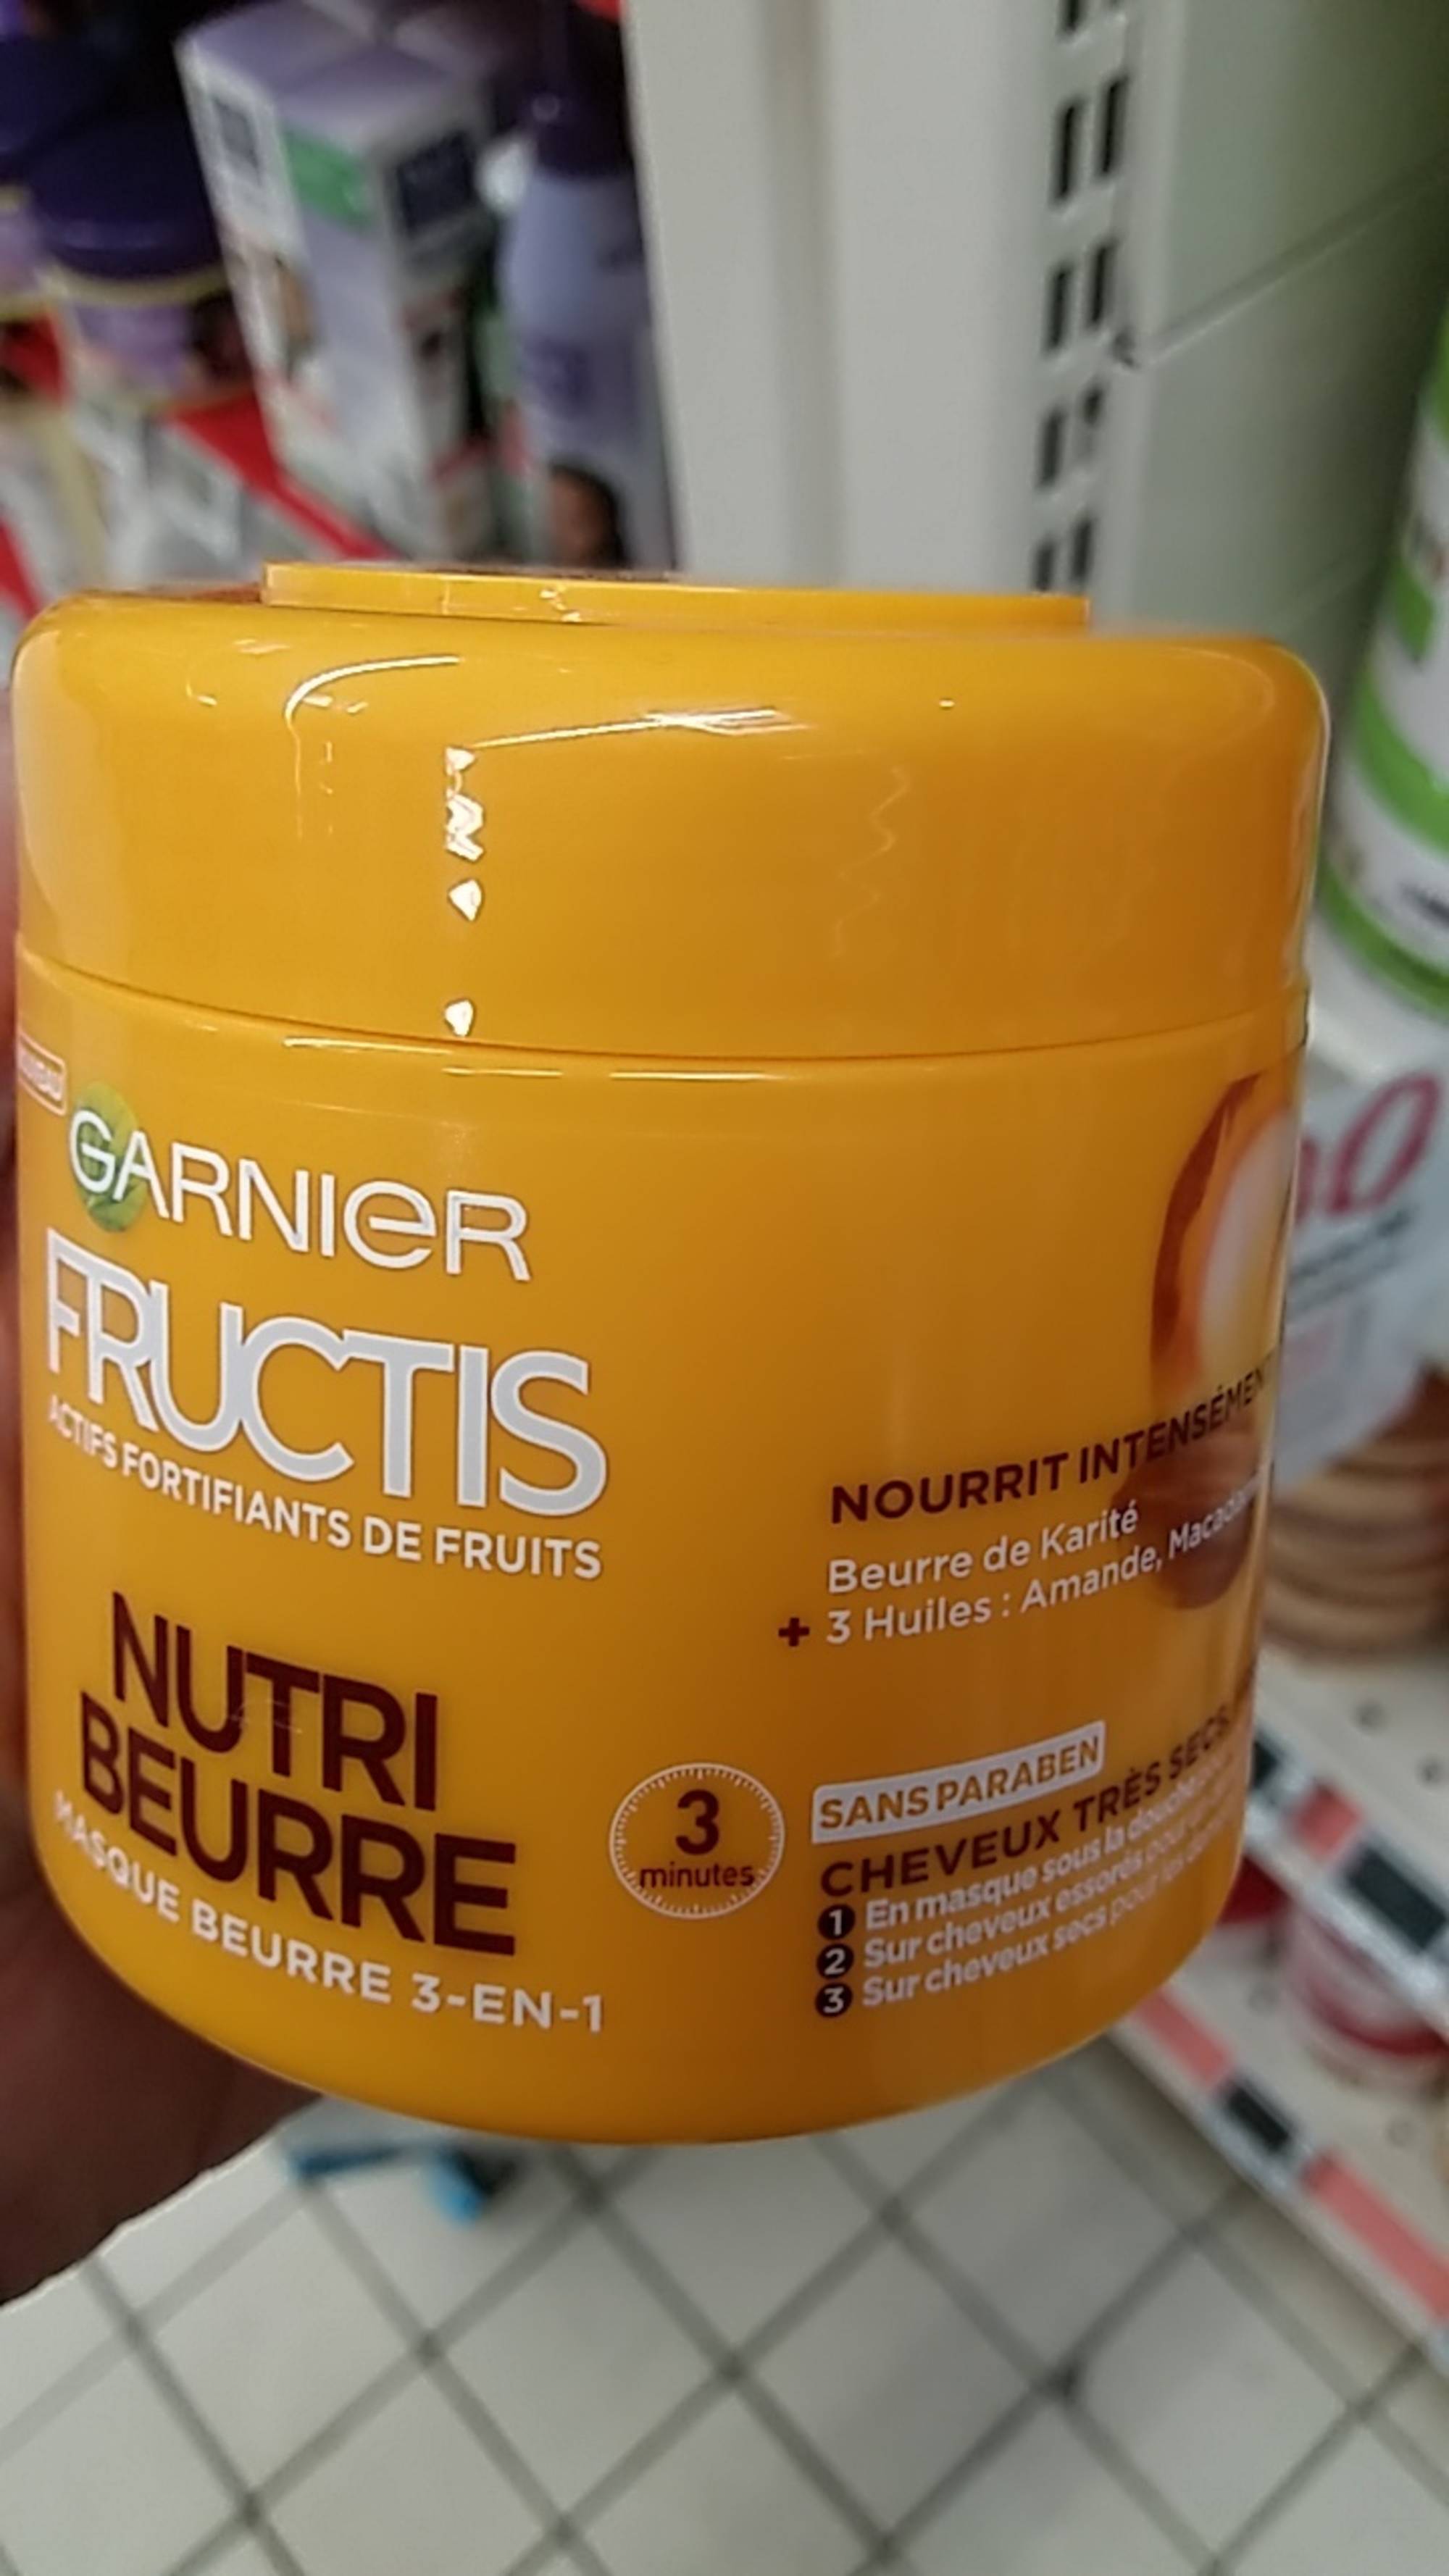 GARNIER - Fructis Nutri Beurre - Masque 3-en-1